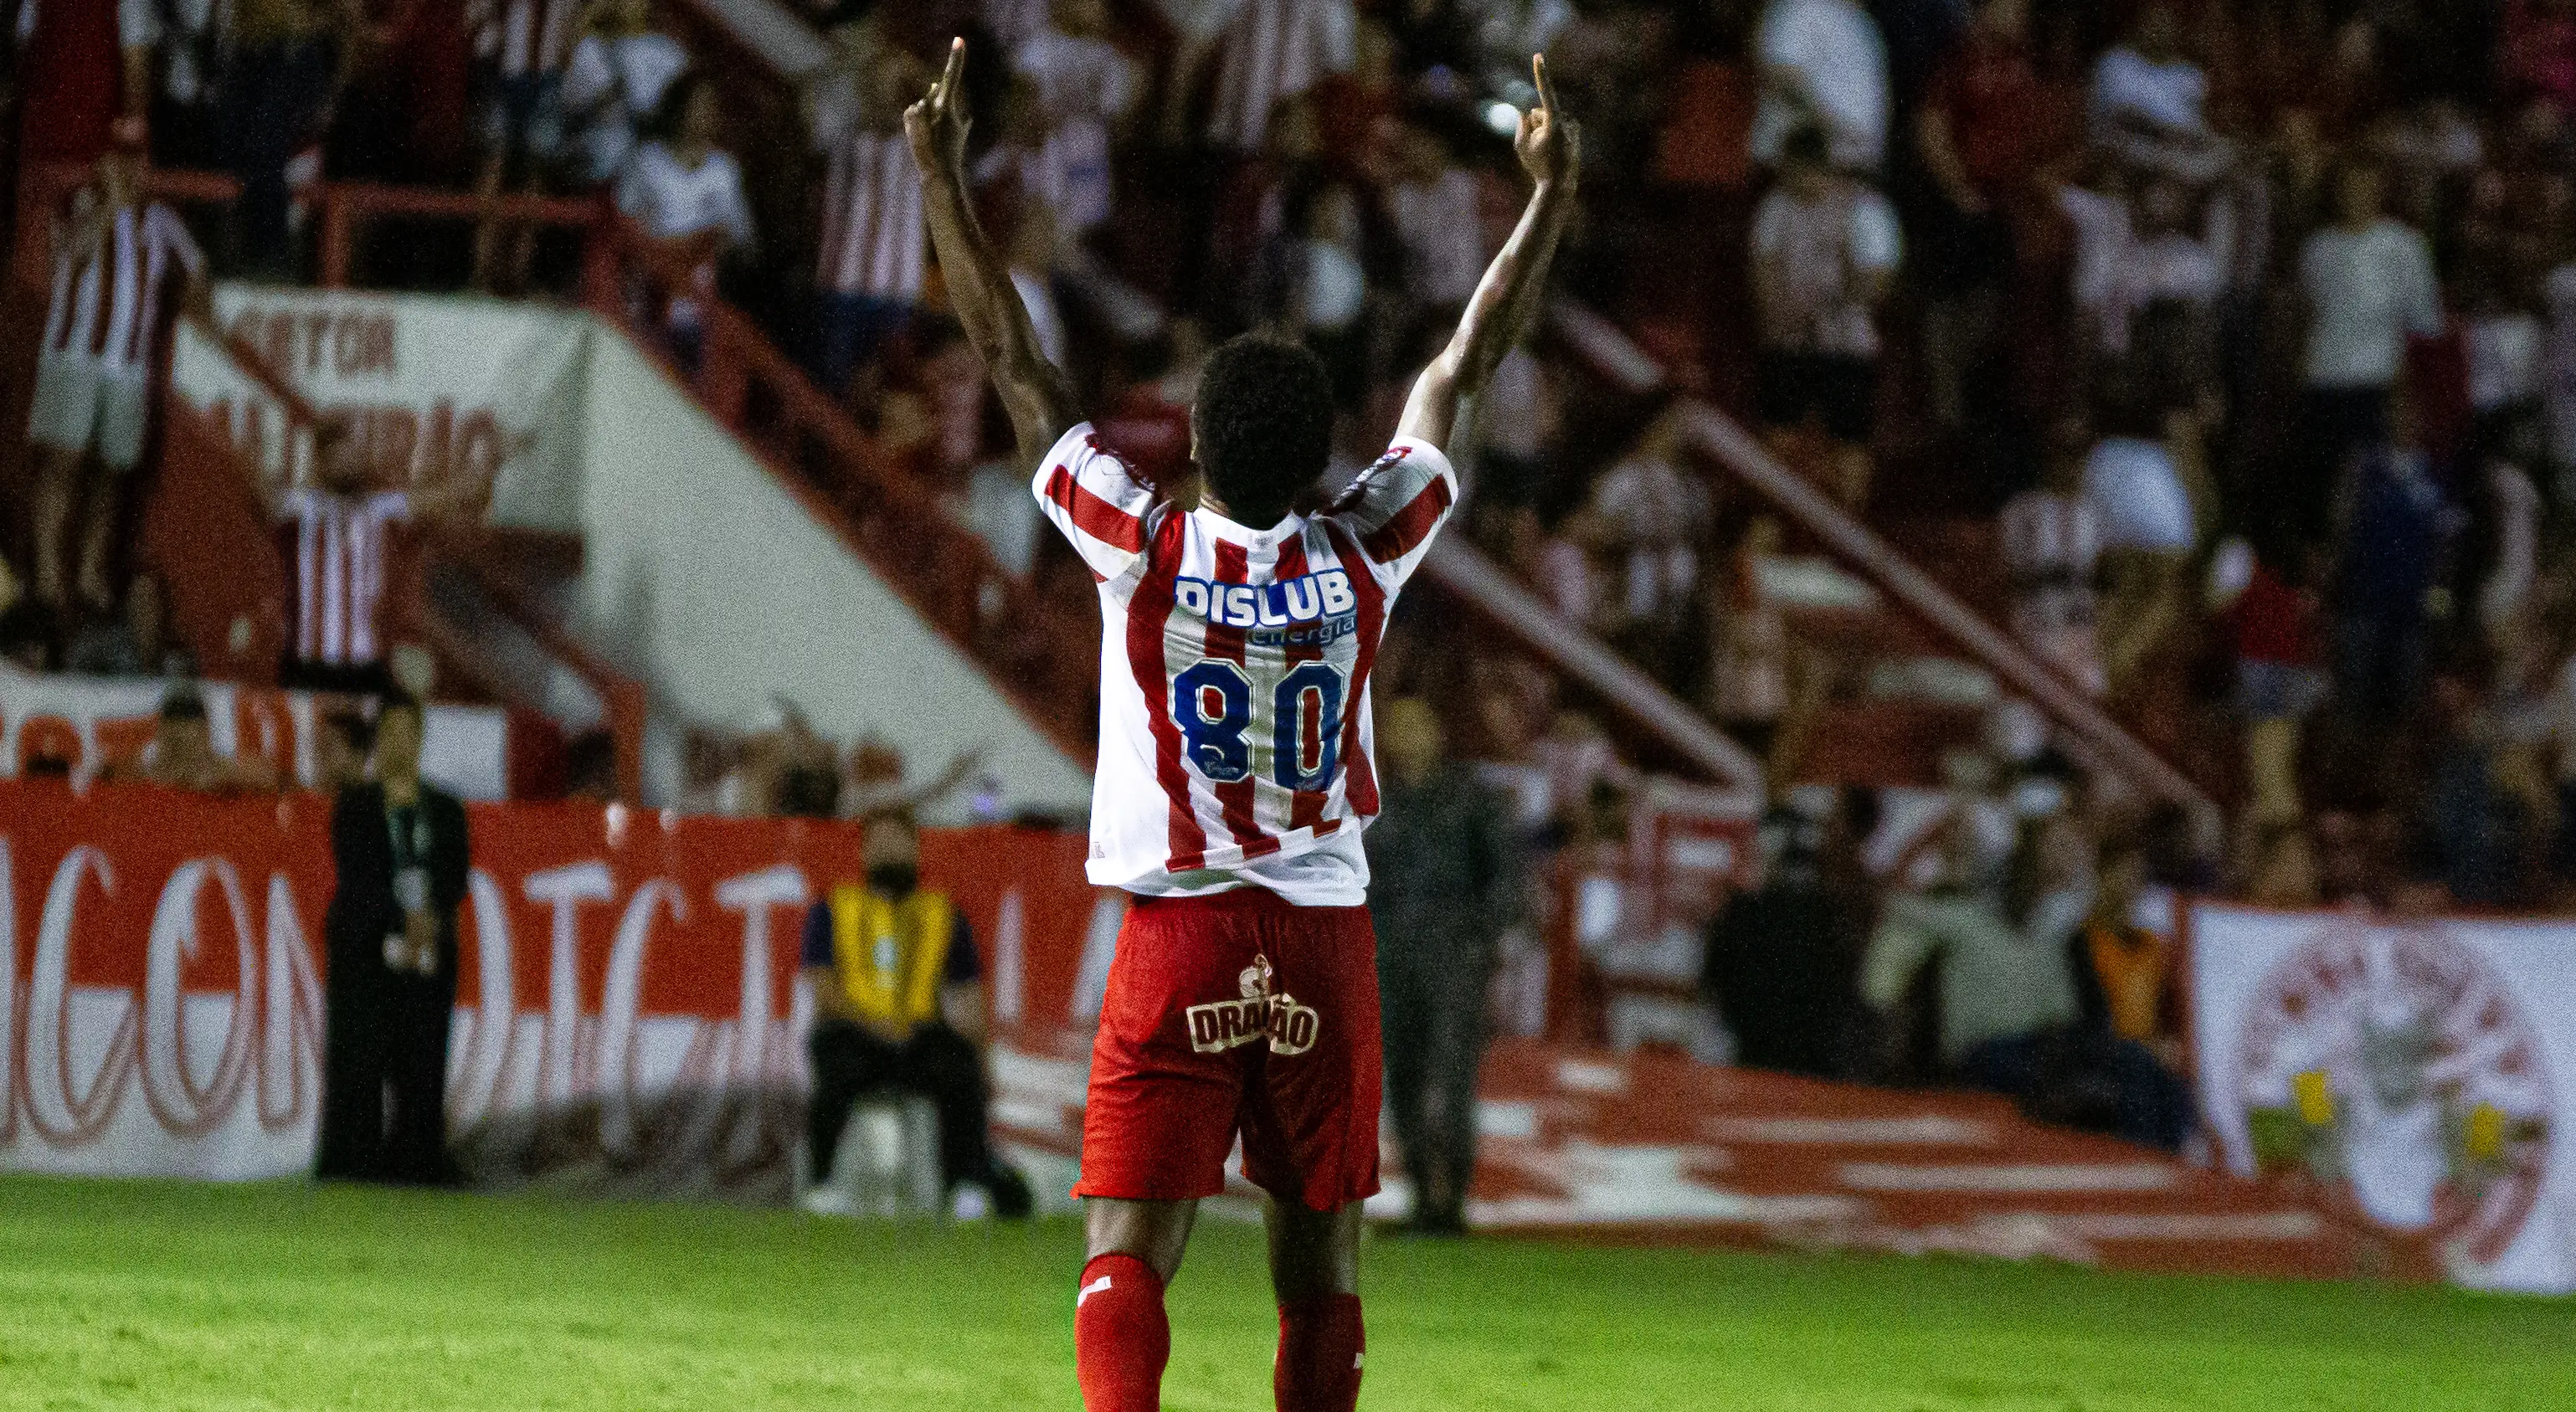 Imagem do atacante do Náutico, Bruno Mezenga, autor dos gols da vitória sobre o Confiança